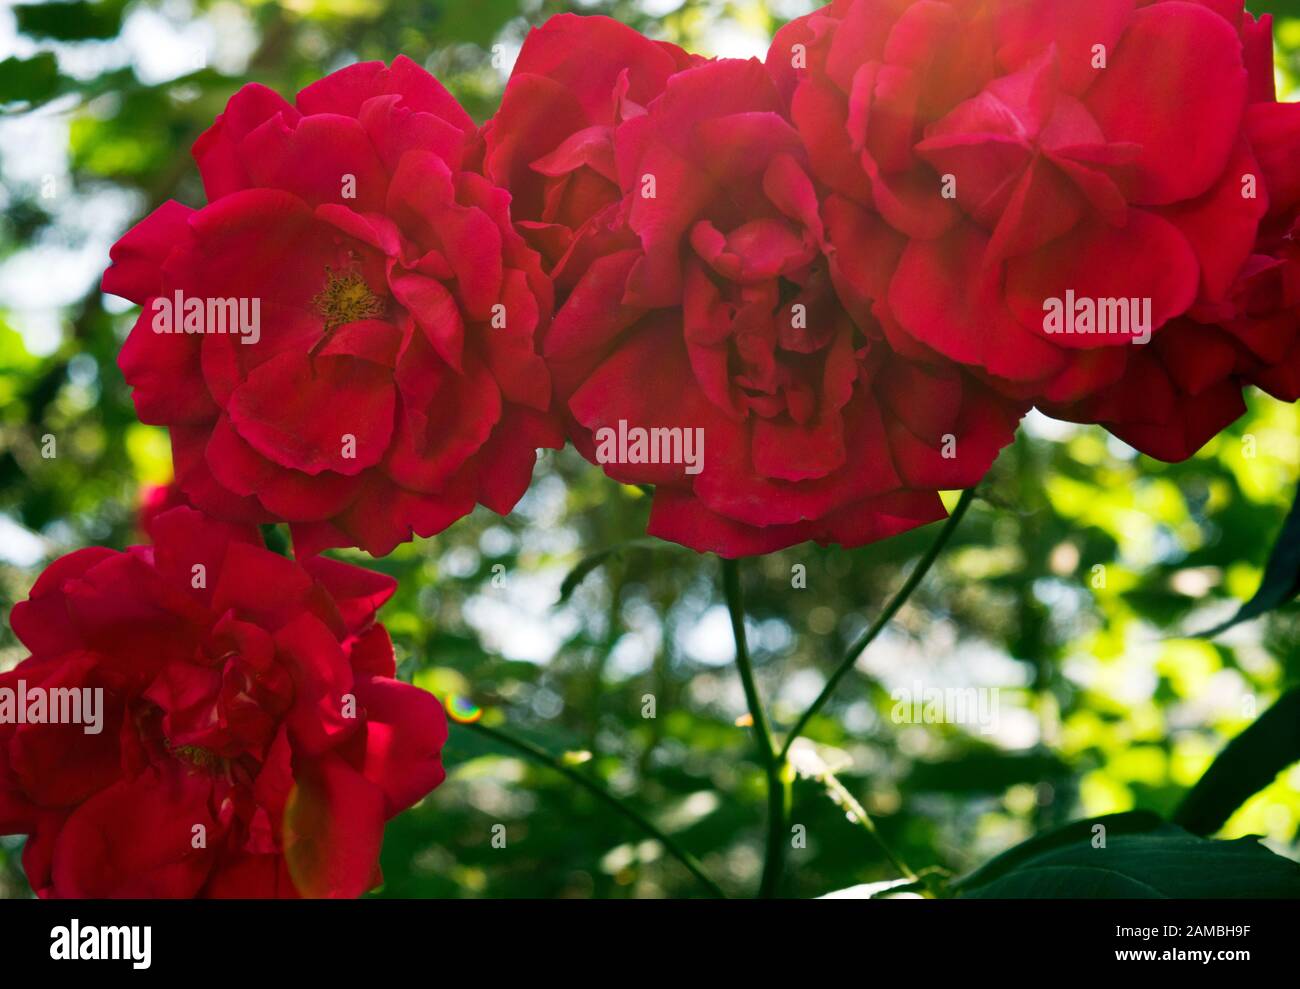 Bella rosa giardino rosso. La rosa rossa è il simbolo definitivo dei sentimenti romantici e rappresenta un vero amore. Primo piano. Foto Stock